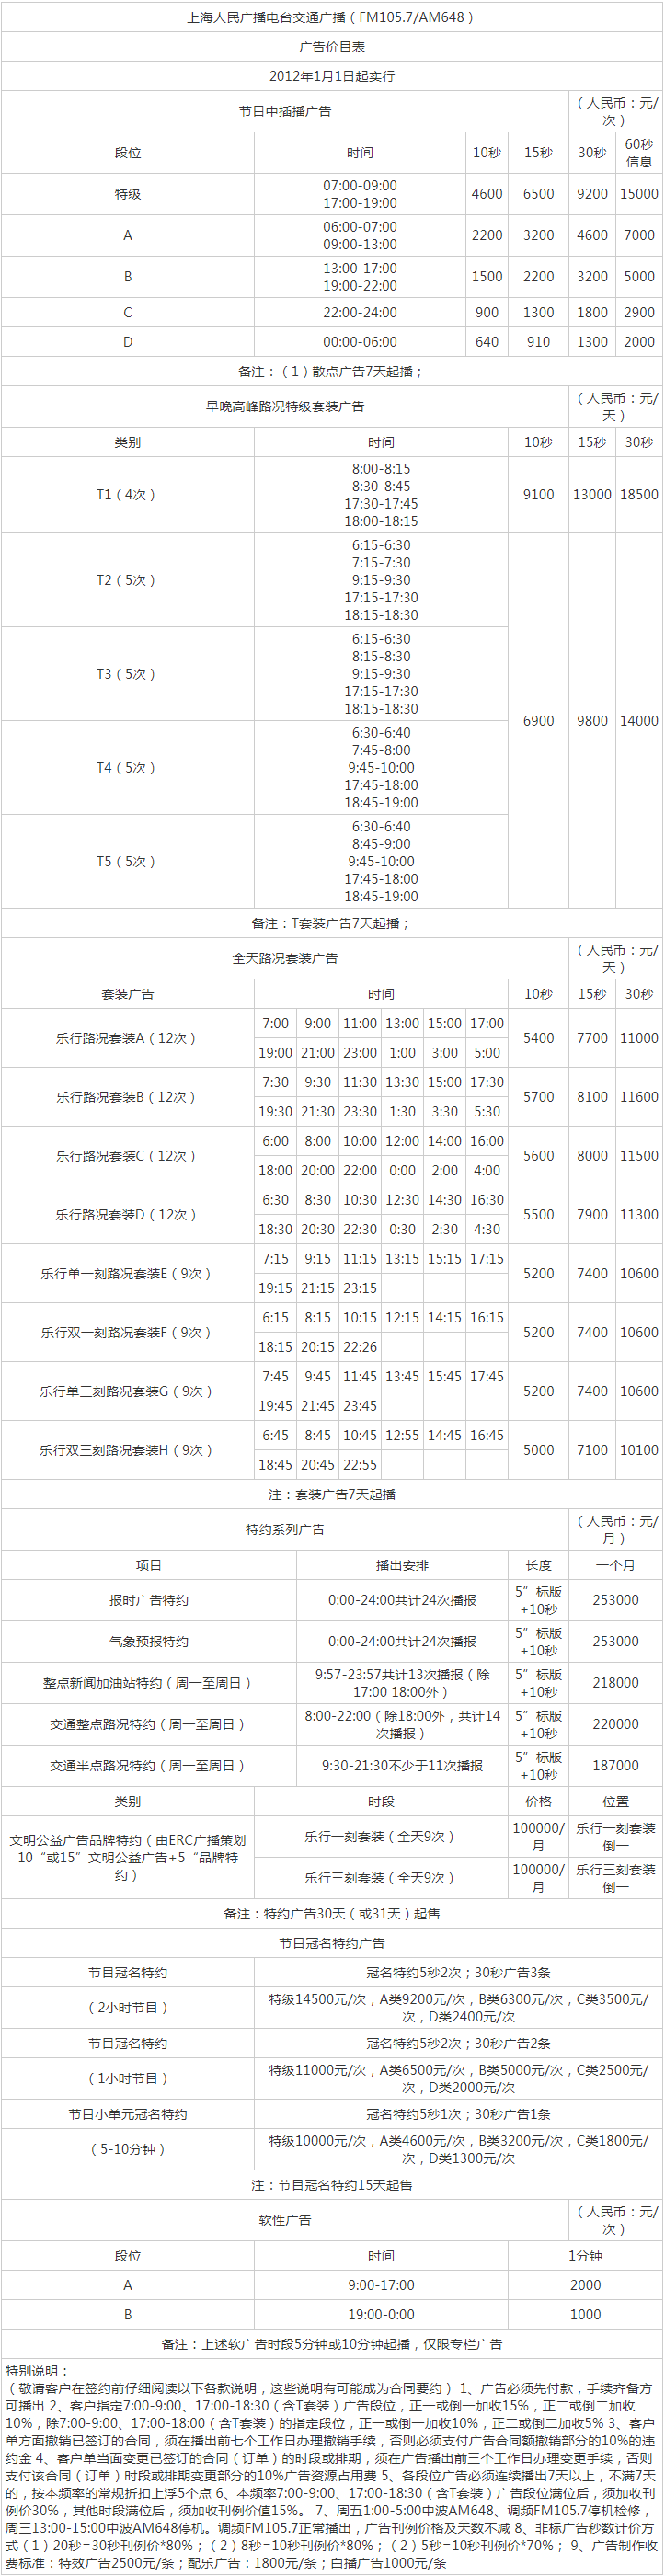 2012上海人民广播电台交通广播FM105.7广告报价表.png